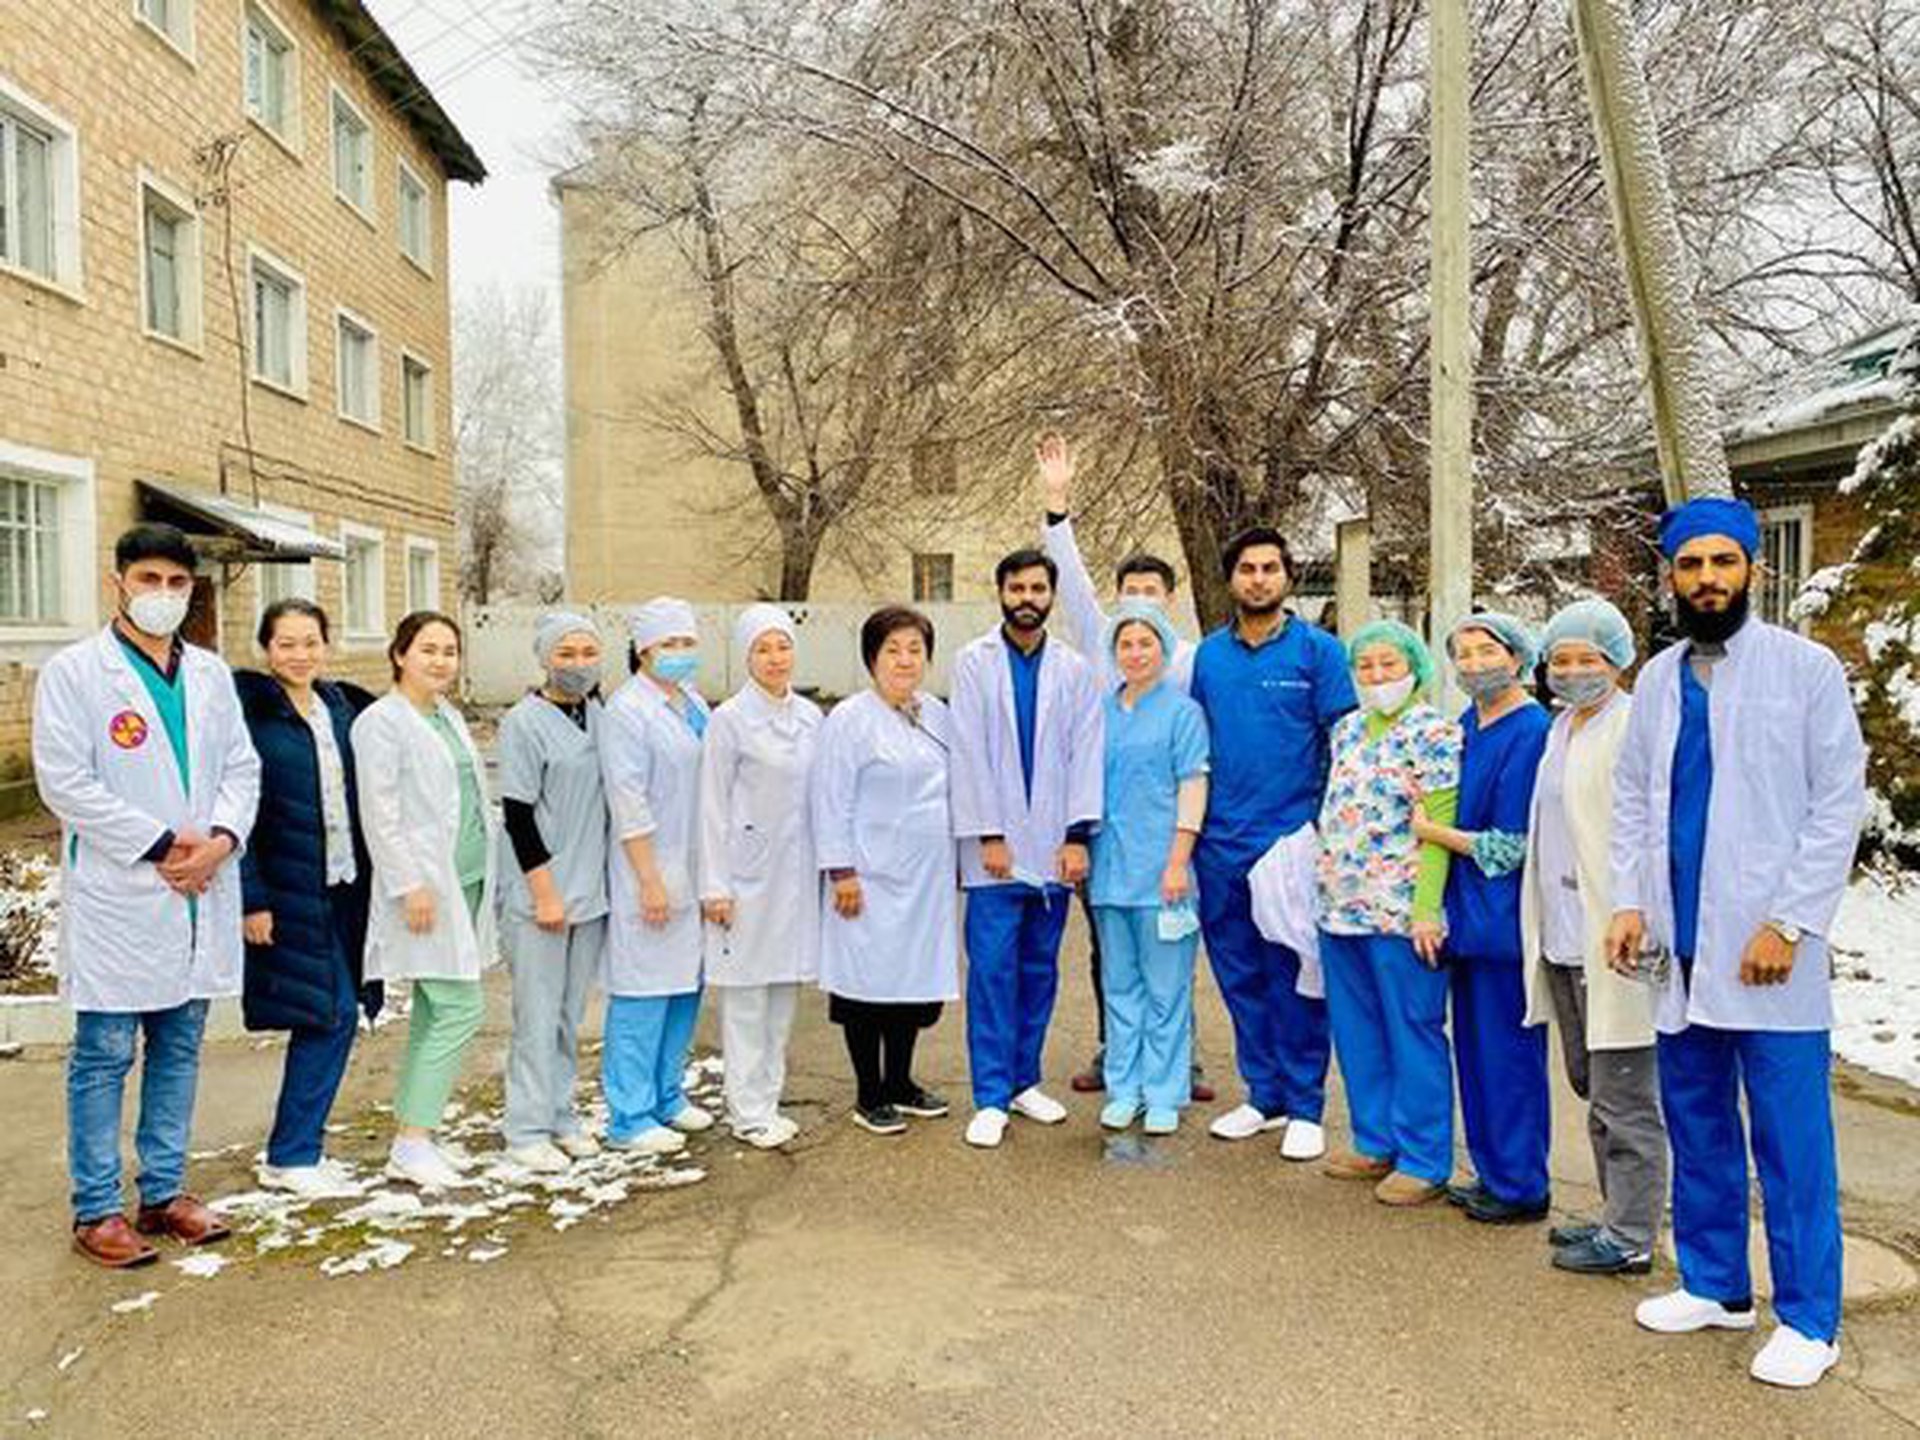 Студенты 6-го семестра Школы медицины Университета Адама посетили больницу Токмока